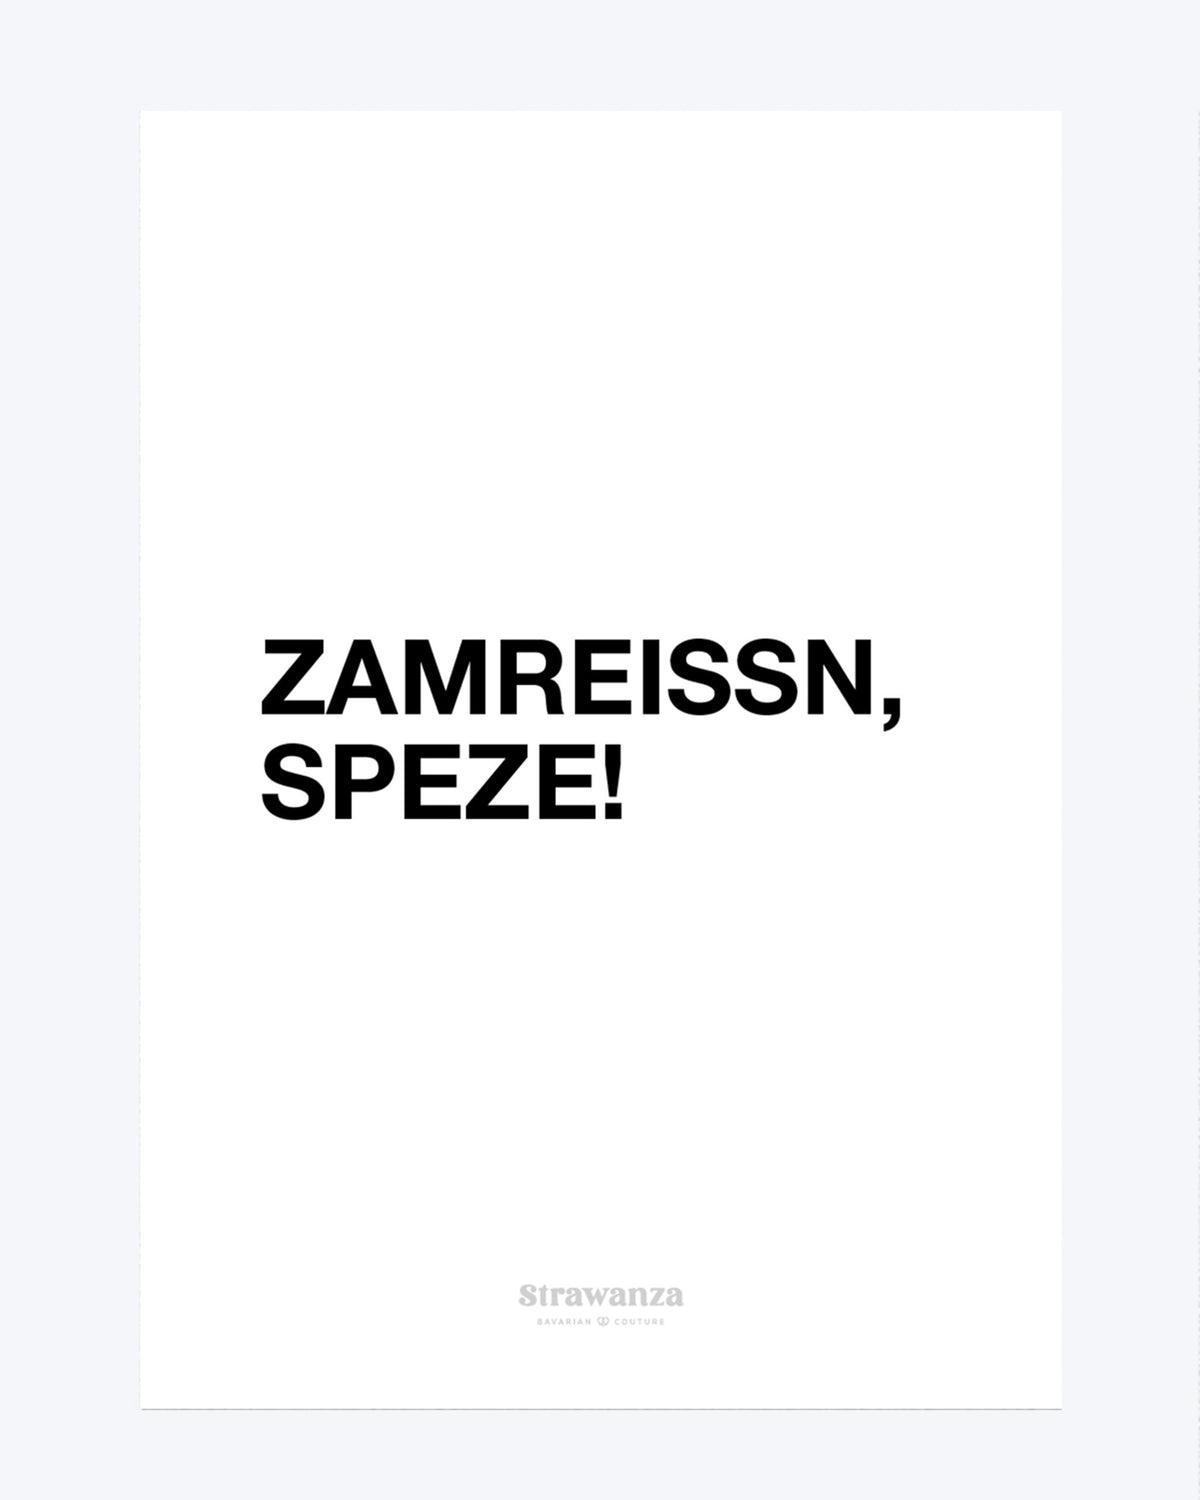 Zamreissn Speze Poster - A3